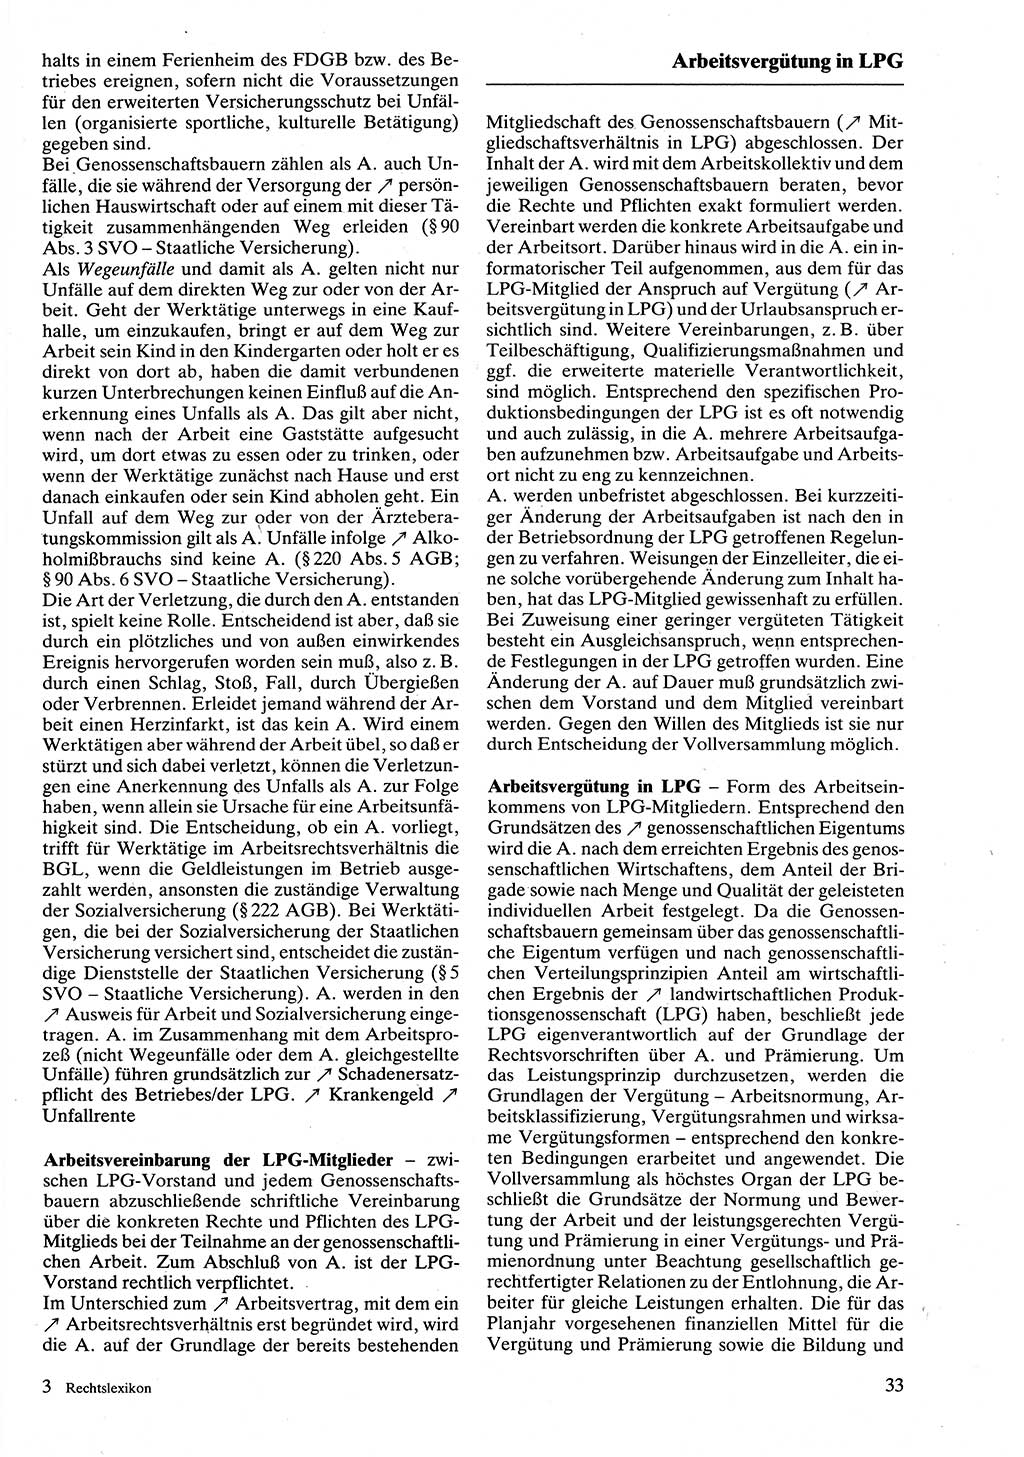 Rechtslexikon [Deutsche Demokratische Republik (DDR)] 1988, Seite 33 (Rechtslex. DDR 1988, S. 33)